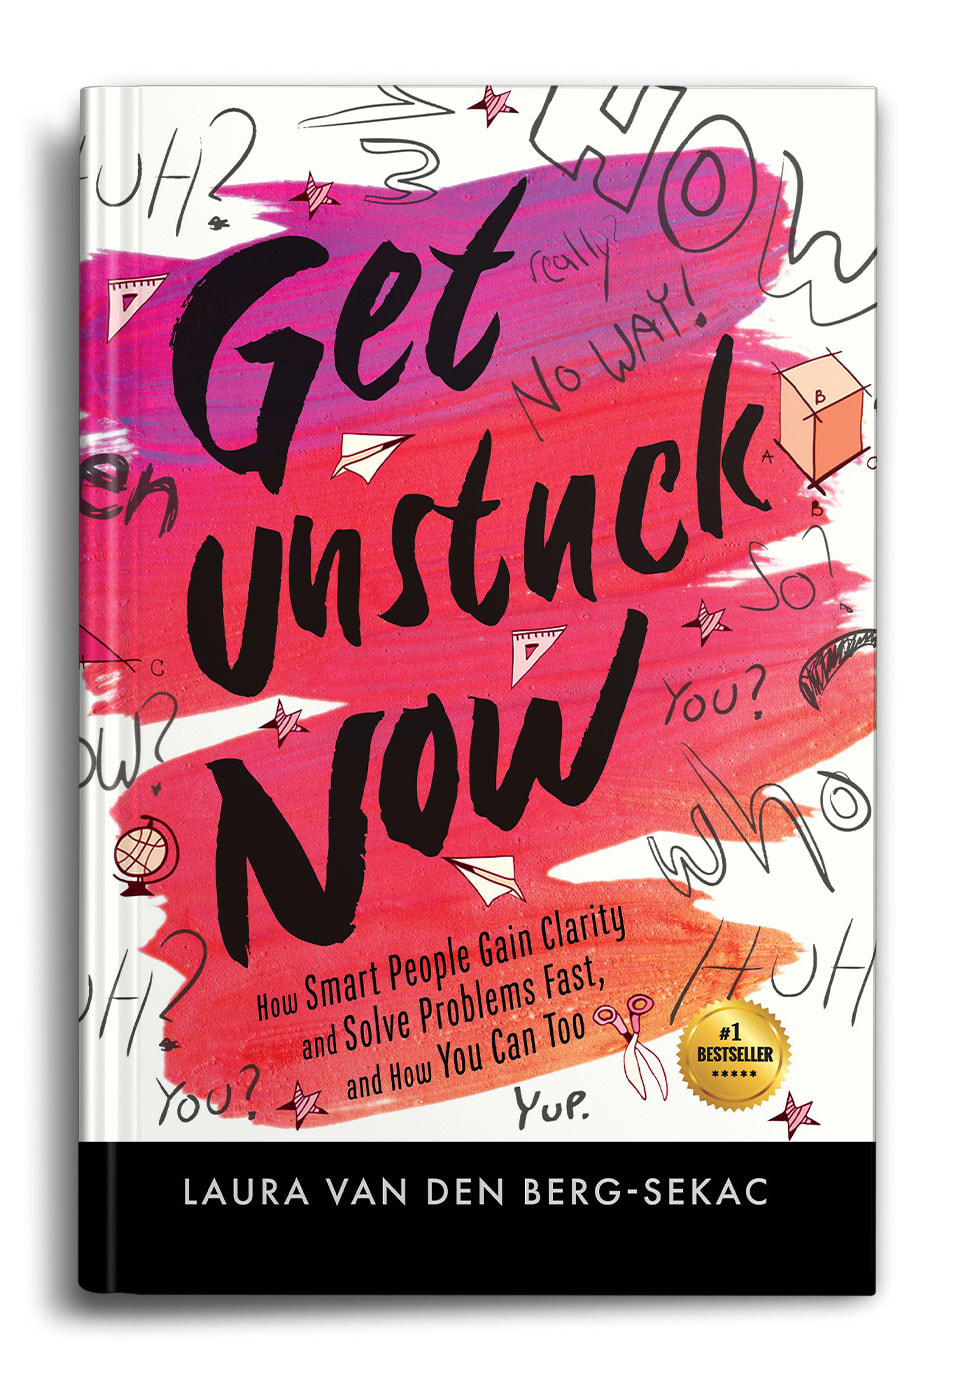 Get-Unstuck-Now-by-Laura-van-den-Berg-Sekac